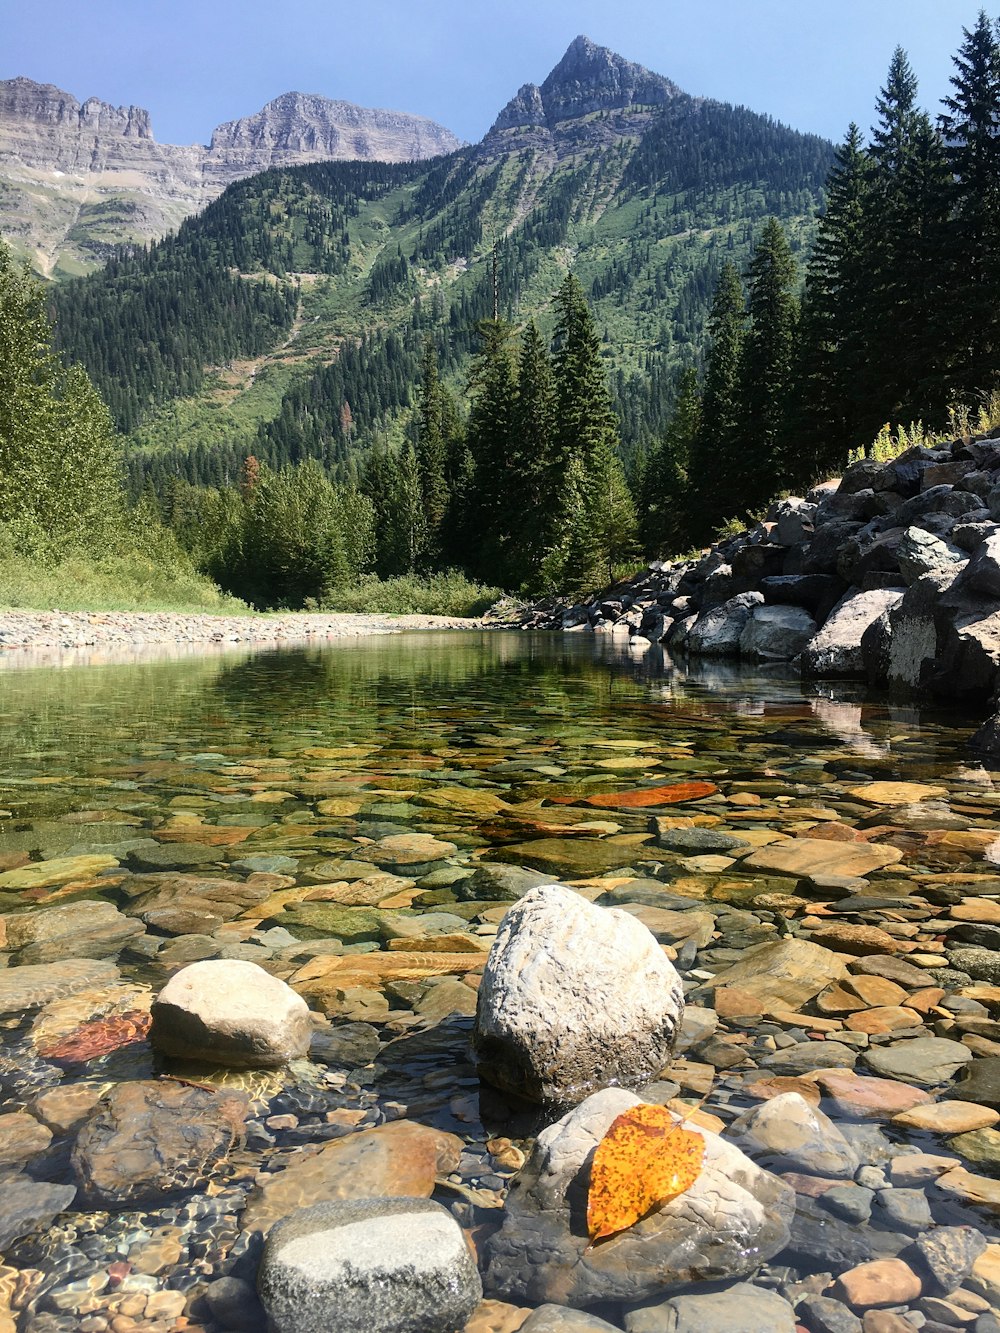 roches grises sur la rivière près des arbres verts et de la montagne pendant la journée